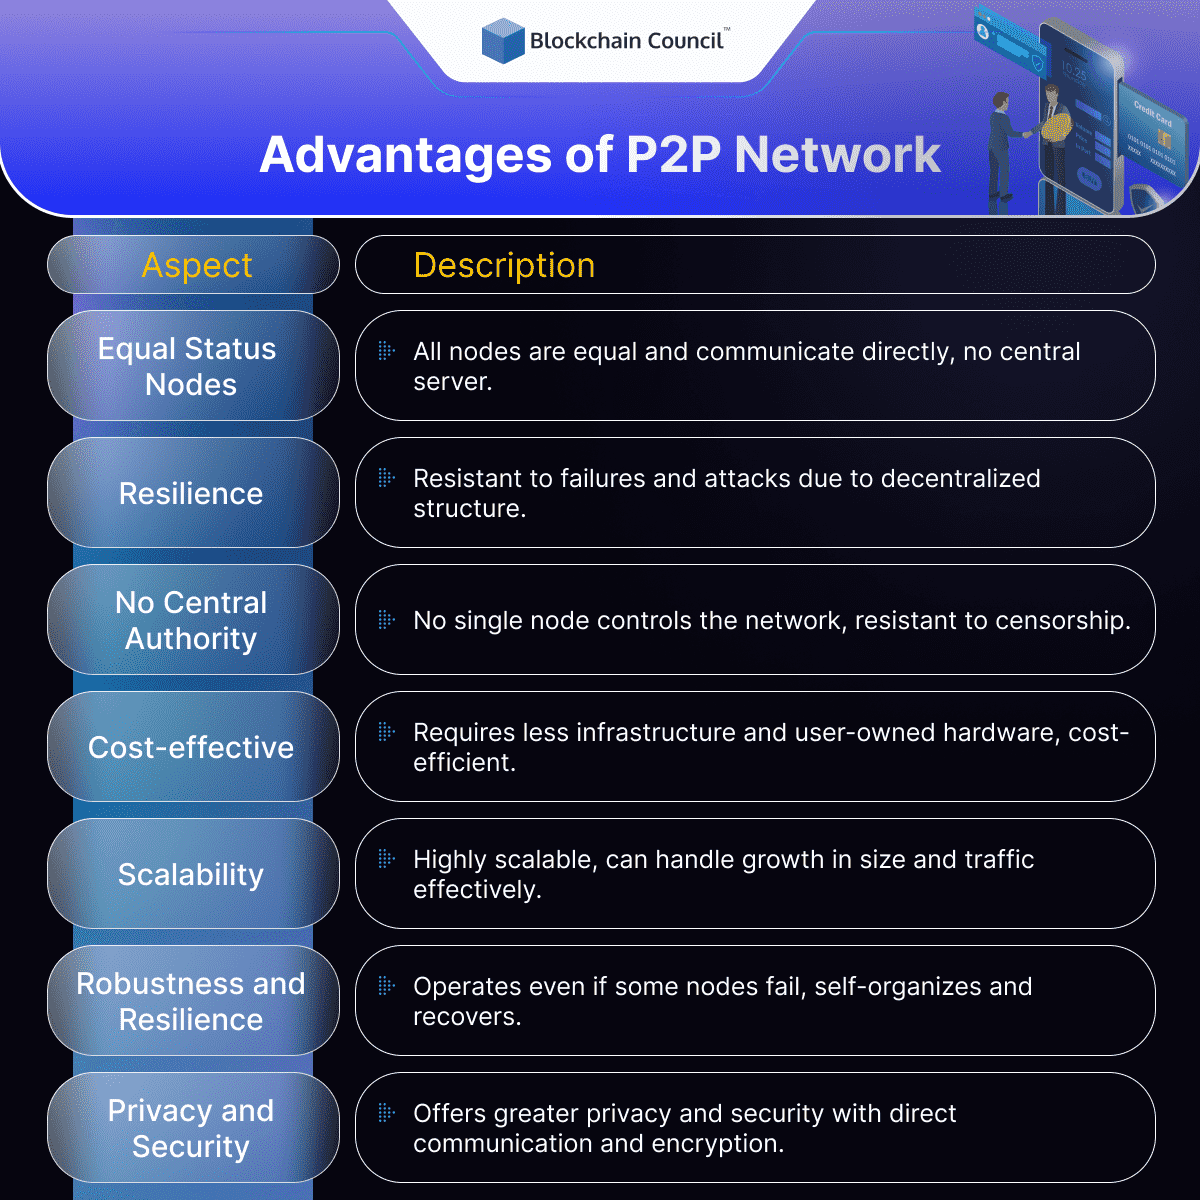 Advantages of P2P Network